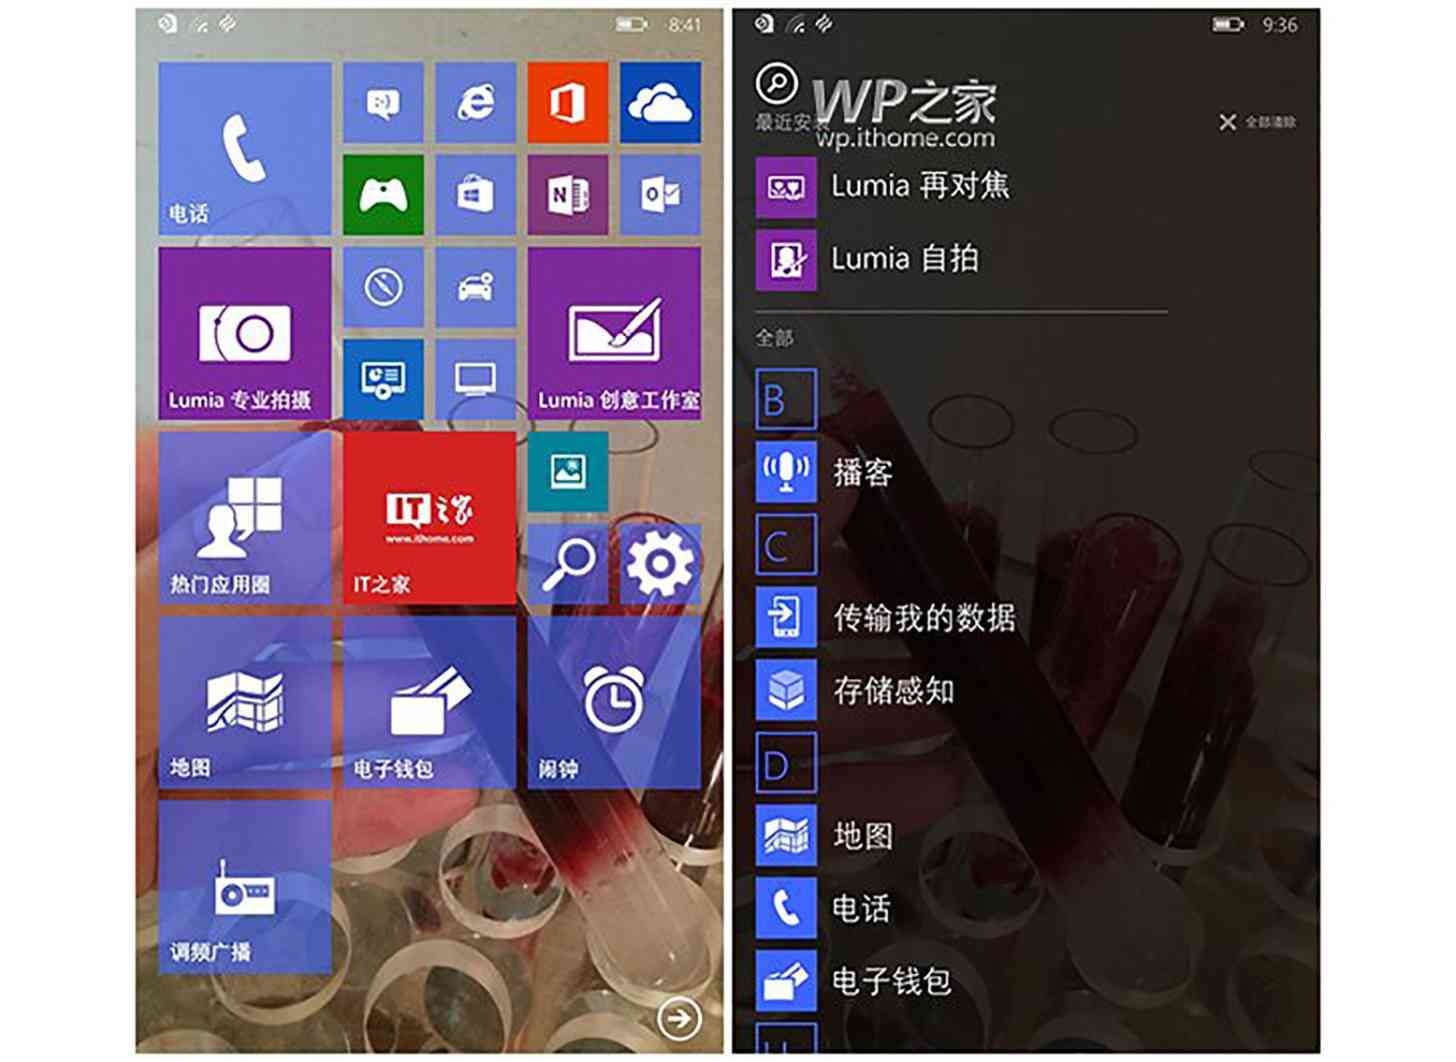 Windows 10 for phones Start screen app list leak